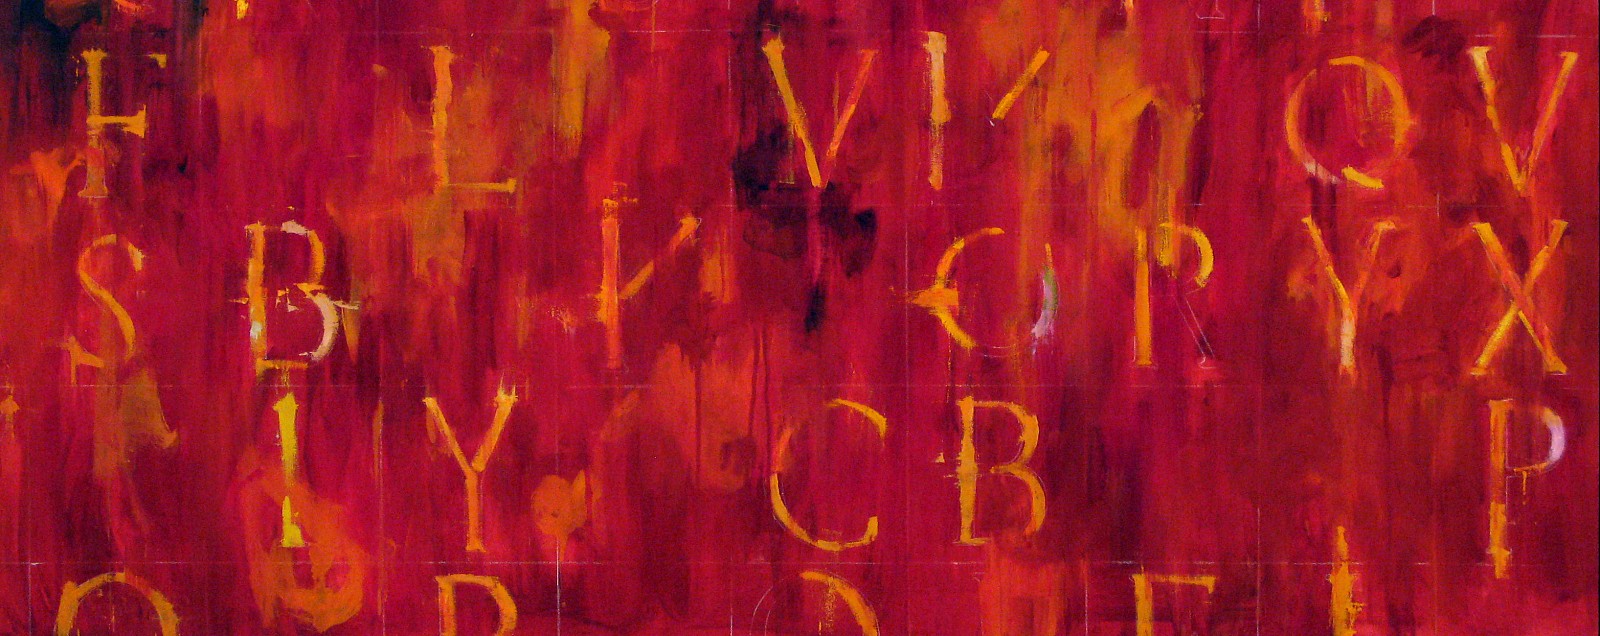 Kikuo Saito, Red Petra, 2006
Oil on Canvas, 37 x 92 in. (94 x 233.7 cm)
SAIT0007
Sold